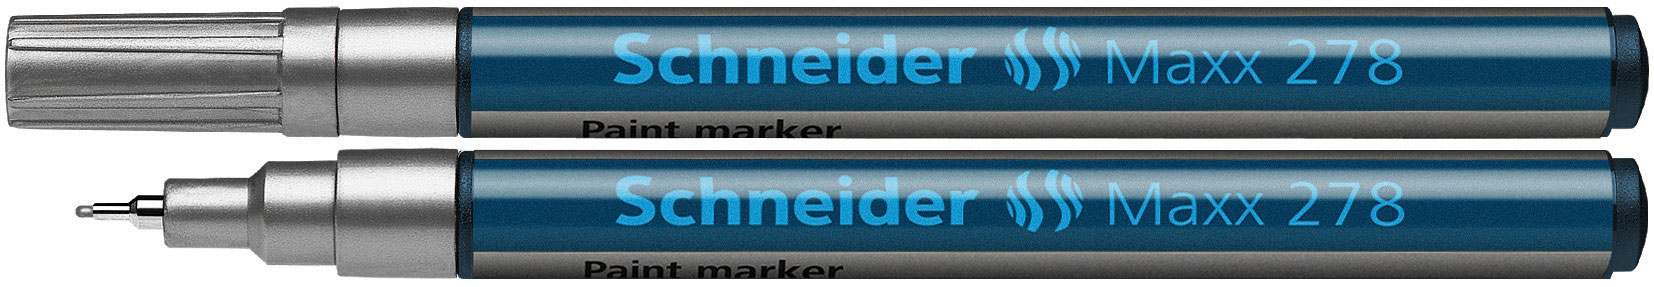 SCHNEIDER Lackmarker Maxx 278 0,8 mm silber